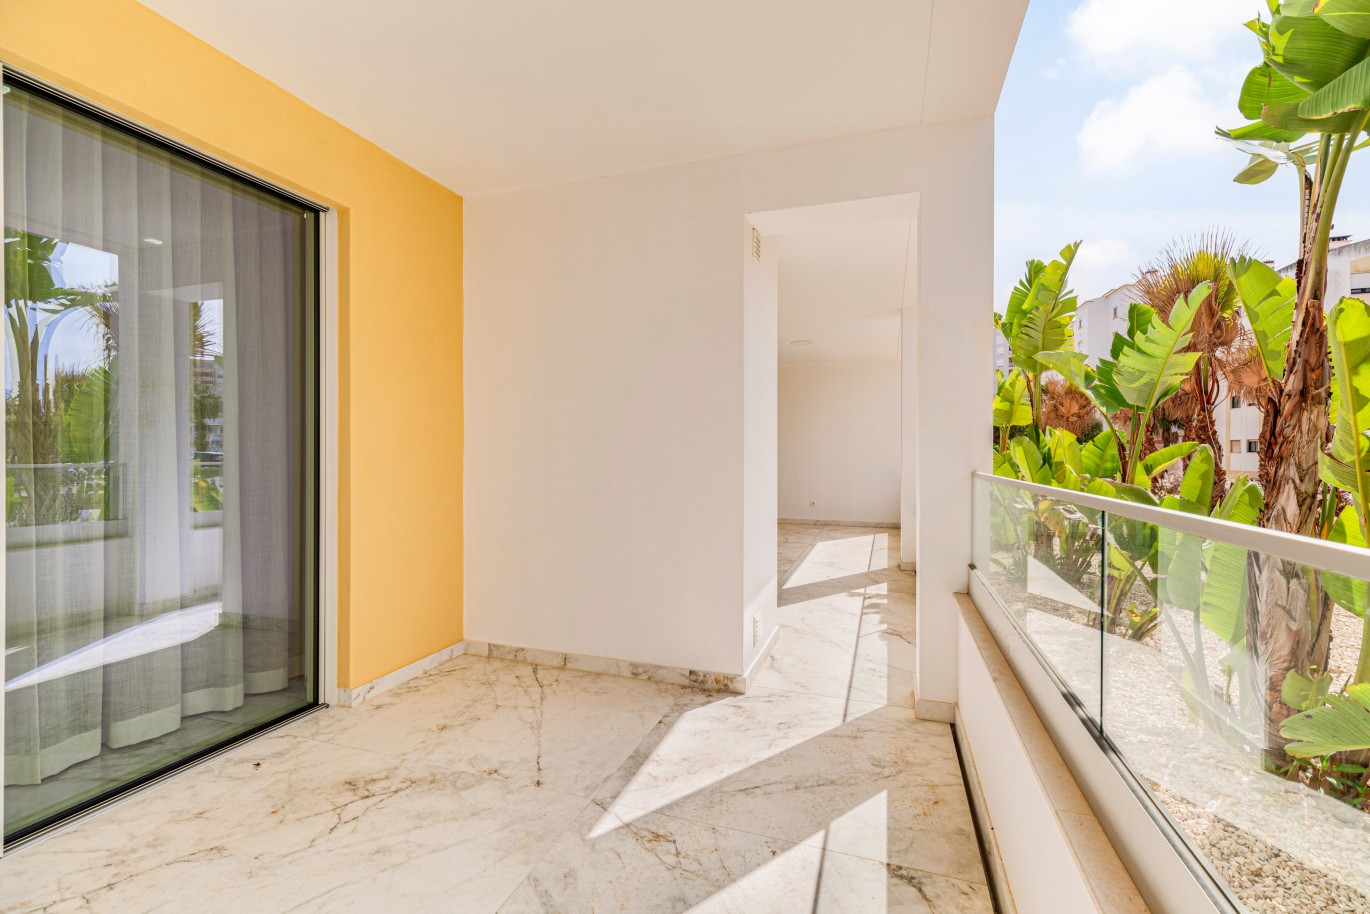 Apartamento, com terraço, para venda, em Lagos, Algarve_238261